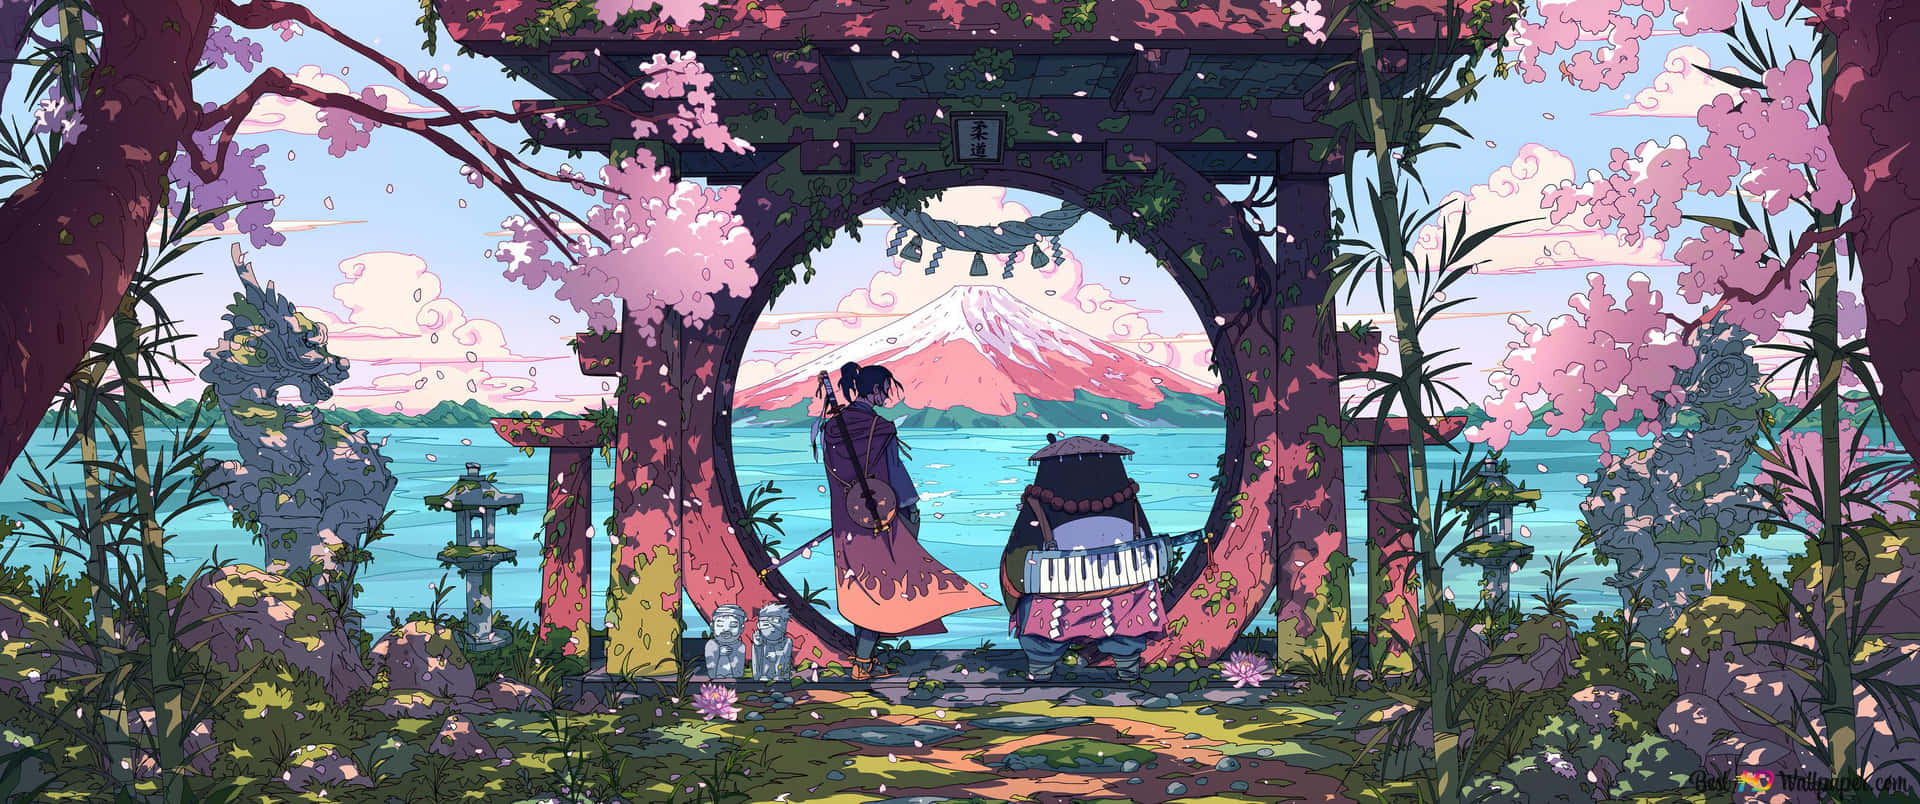 Studio Ghibli aesthetic wallpaper  Studio ghibli background Studio ghibli  art Studio ghibli poster